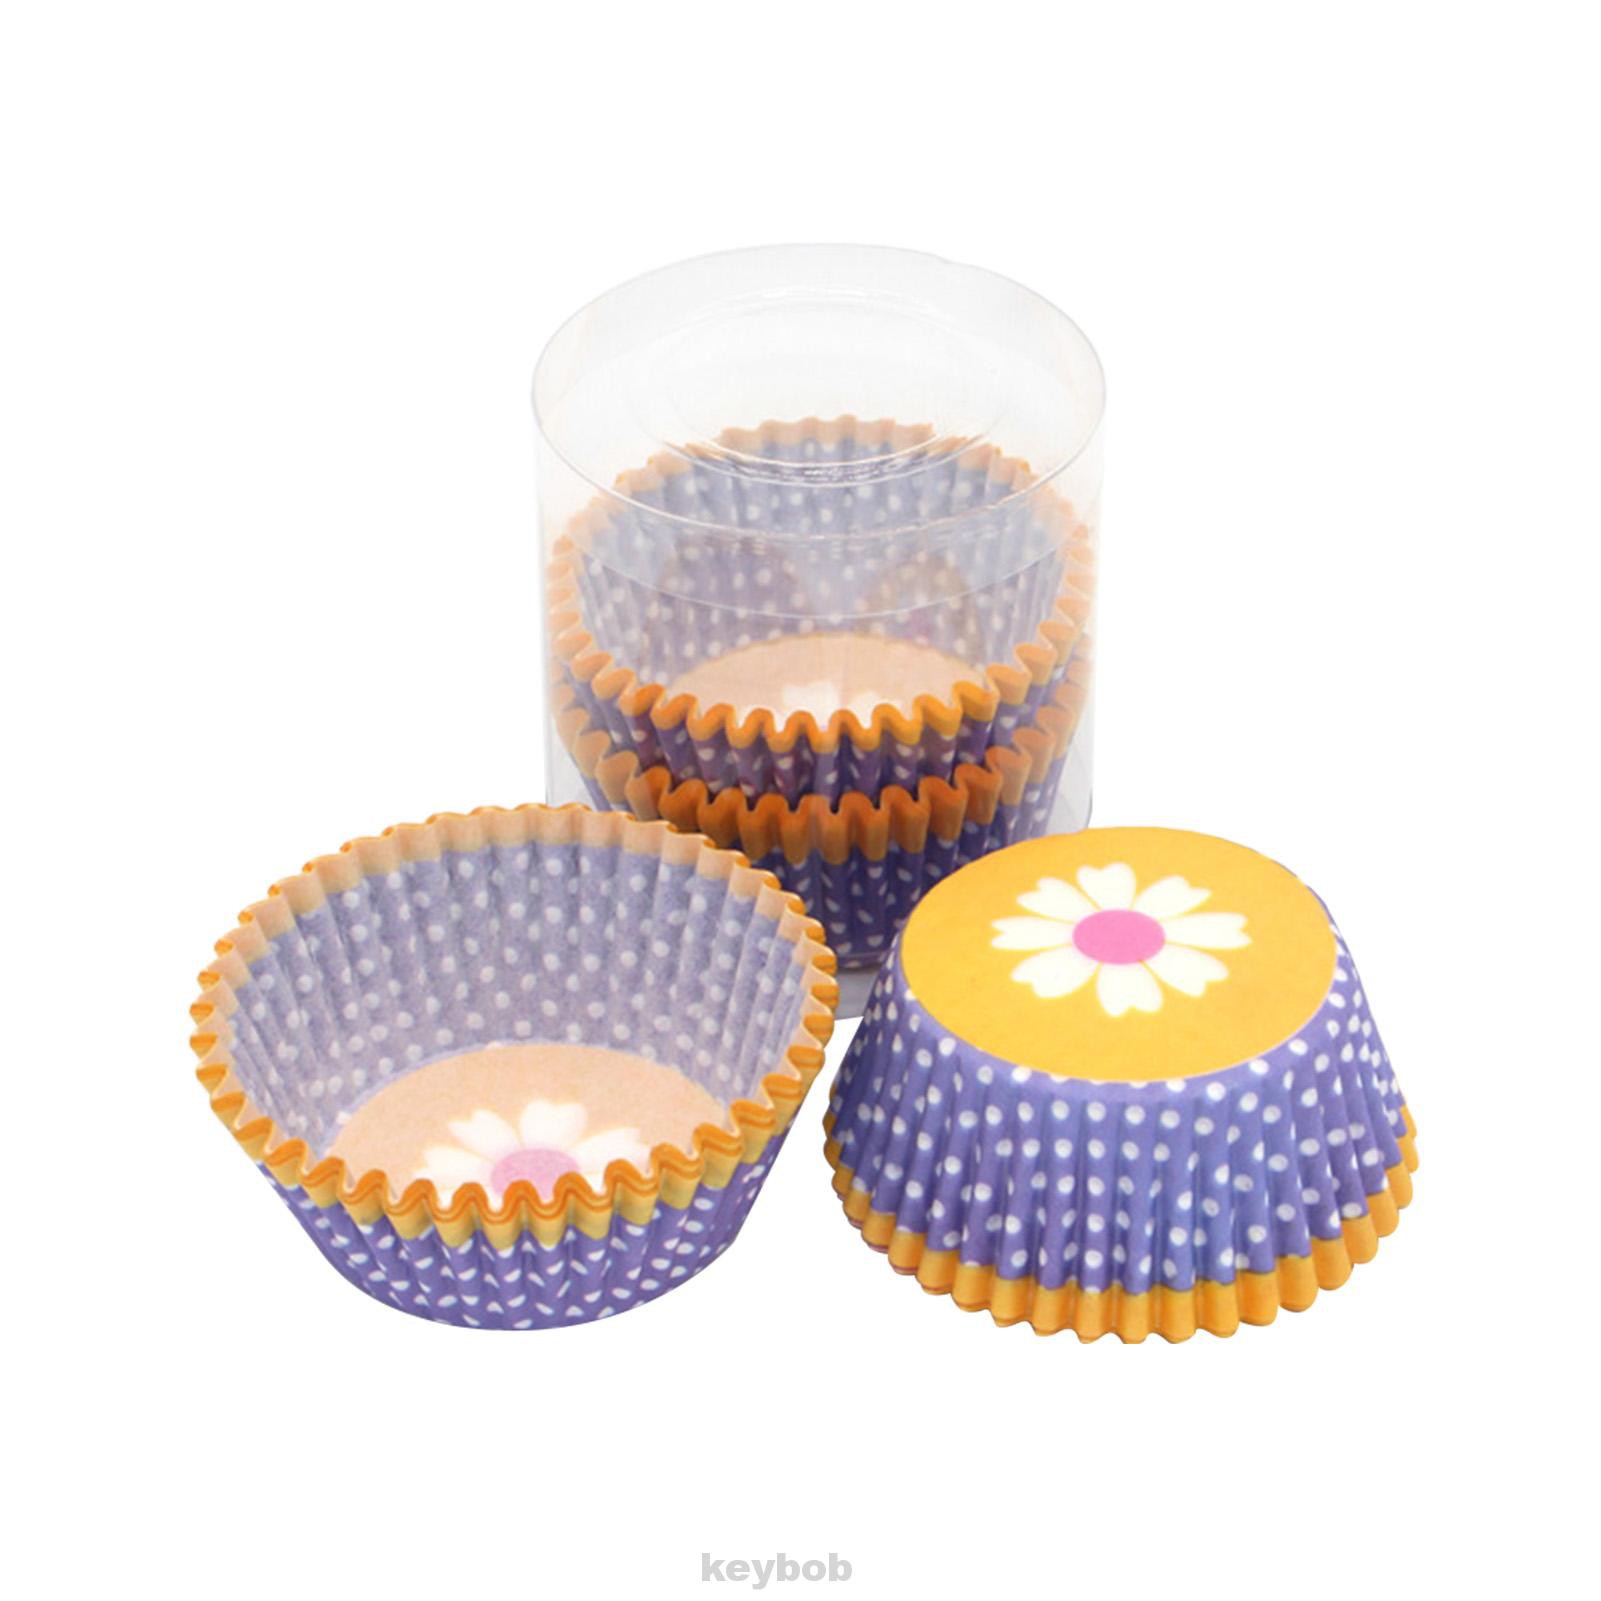 Set 100 Cốc Giấy Làm Bánh Cupcake / Bánh Cupcake / Tiệc Cưới / Sinh Nhật Diy